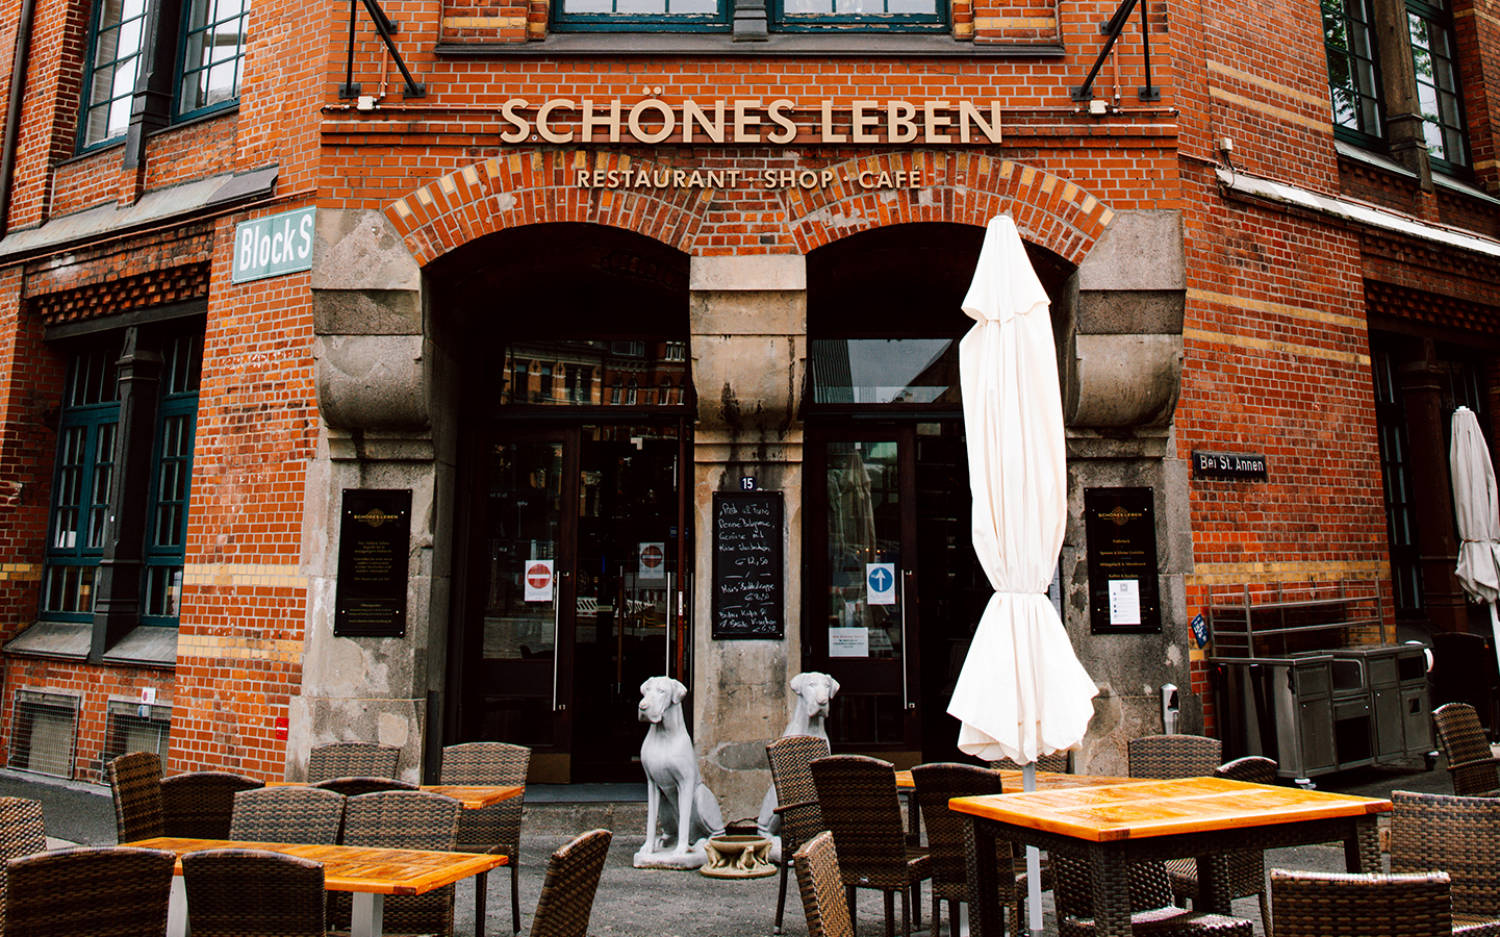 Restaurant - Shop - Cafe: Das Schönes Leben in der Speicherstadt / ©Schönes Leben